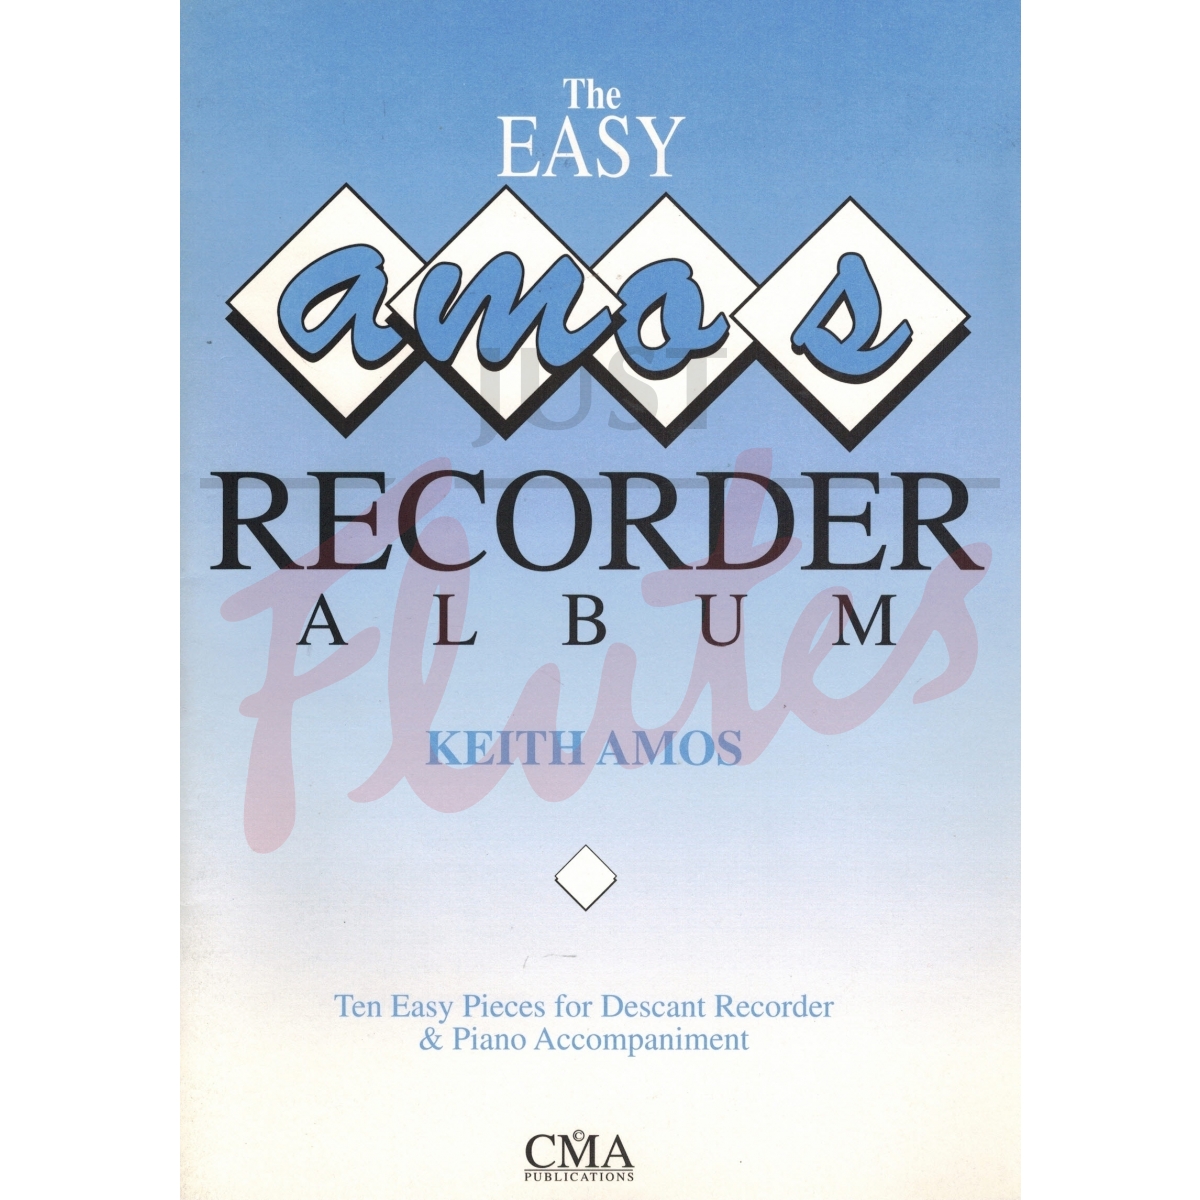 The Easy Amos Recorder Album 